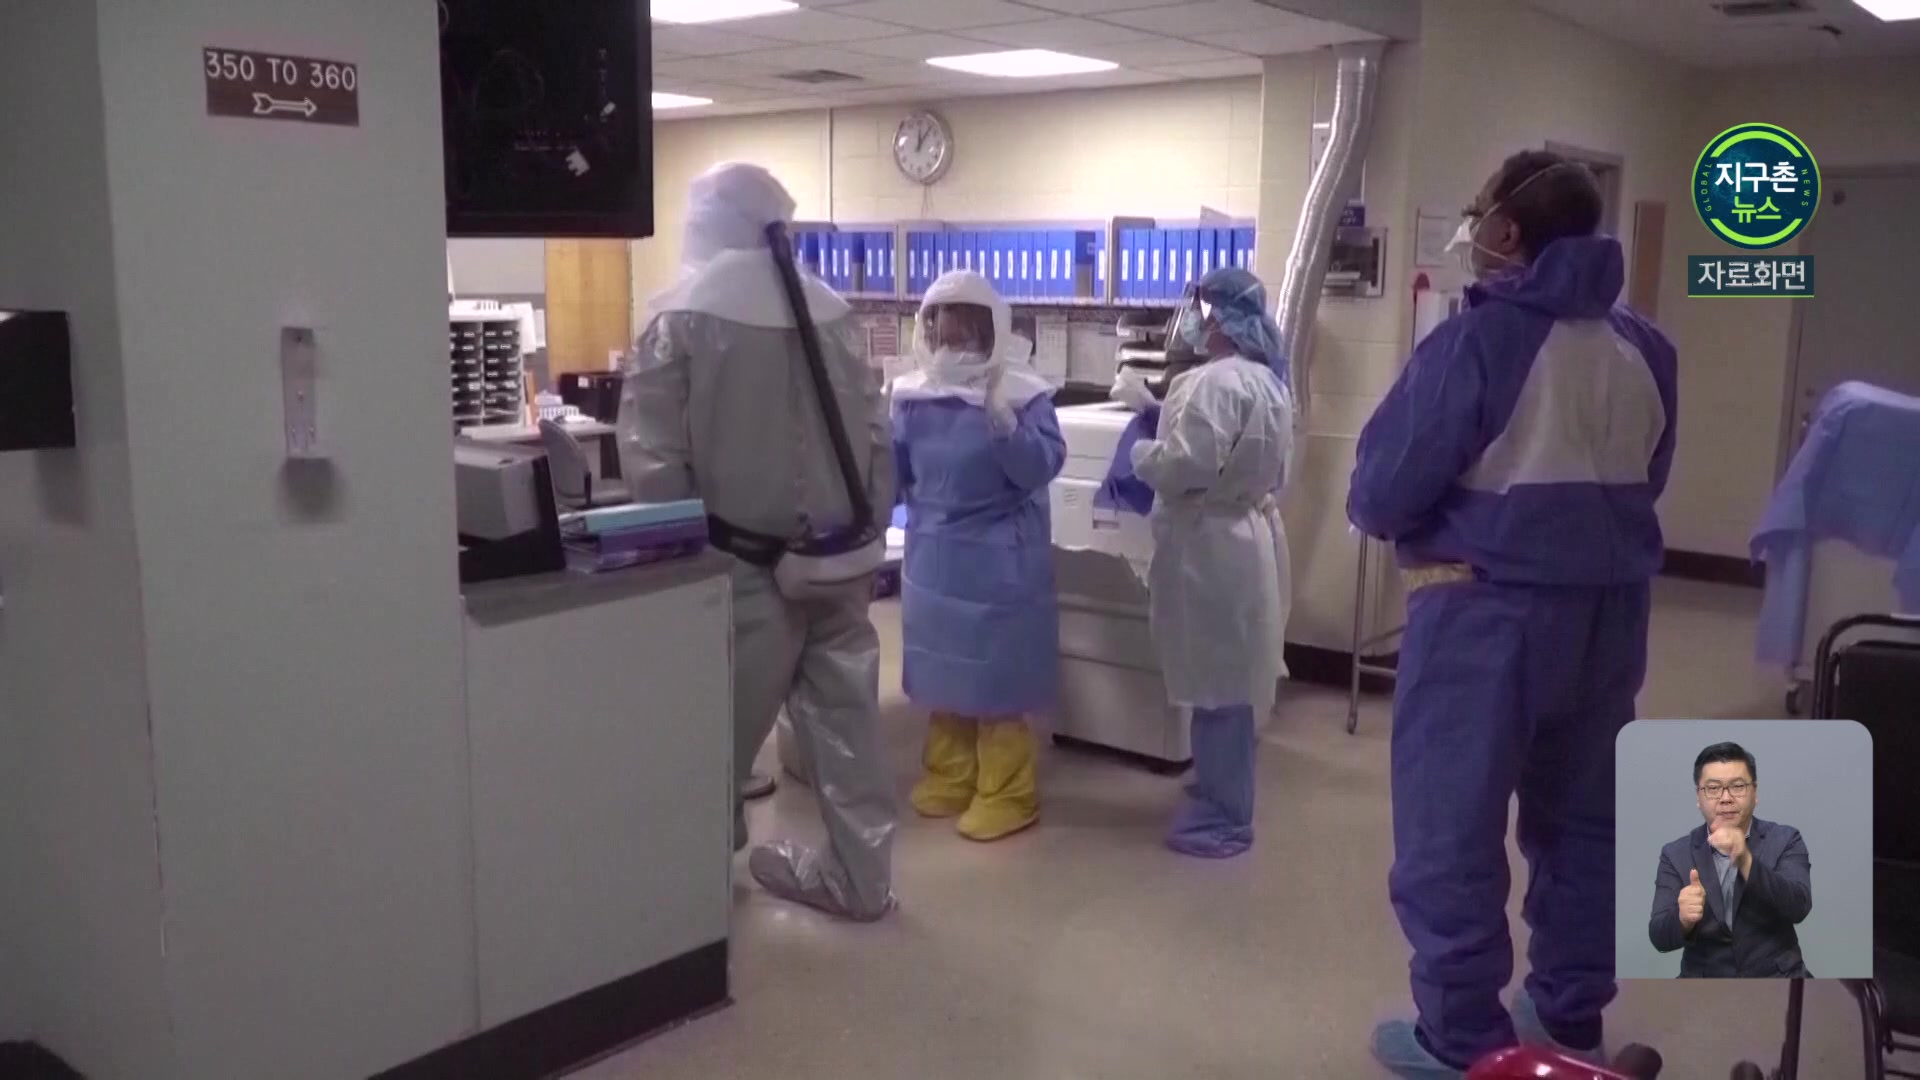 미국, 코로나19 검사비 6,400만 원 청구한 병원